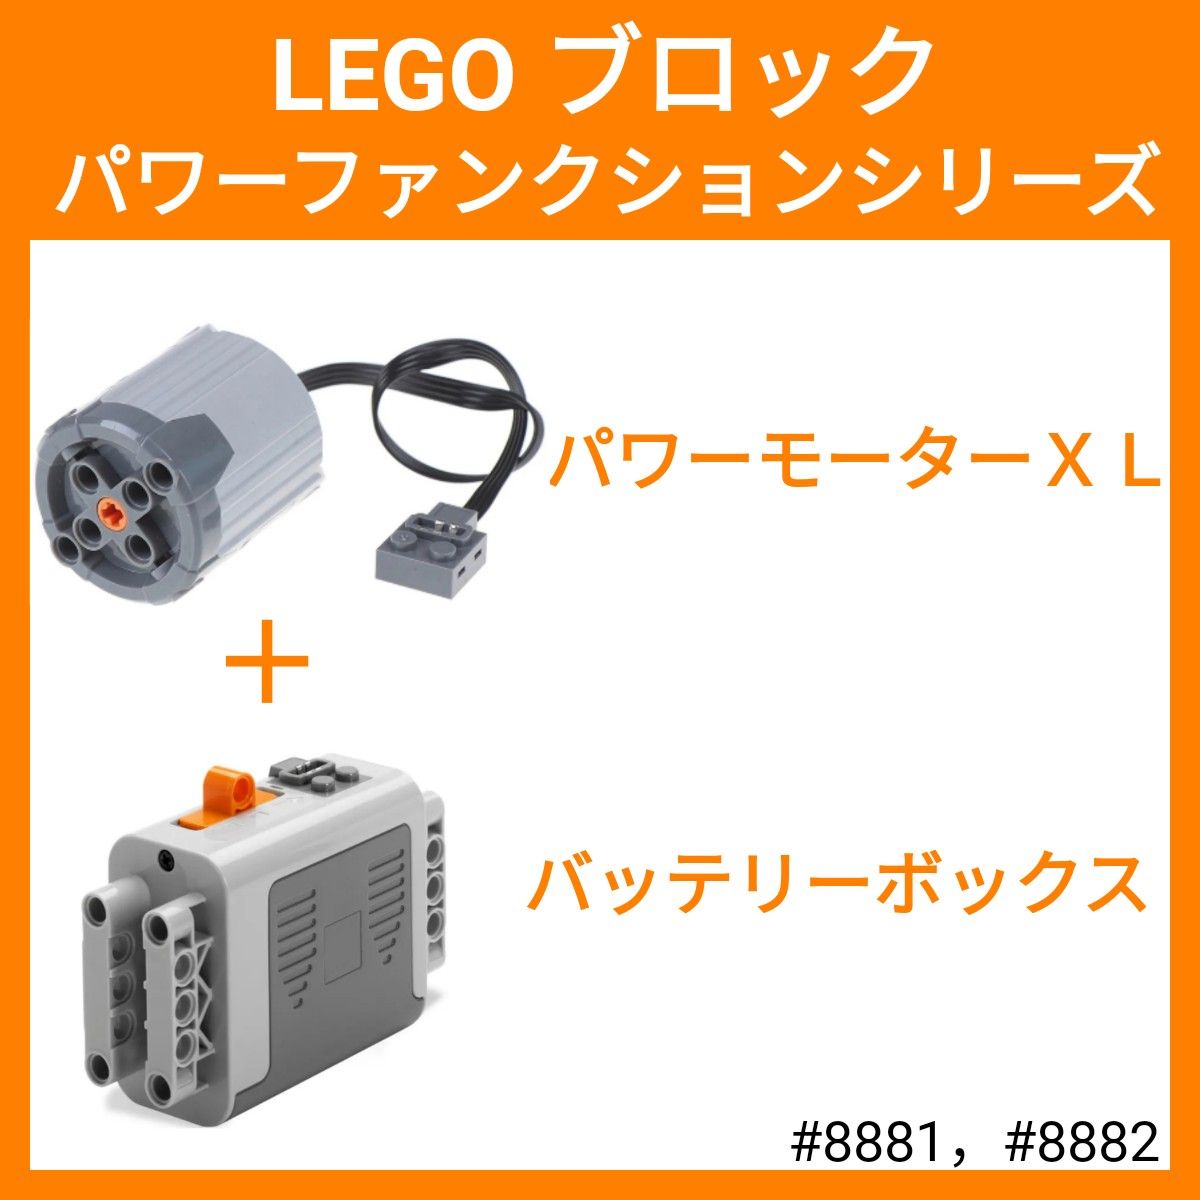 【数量限定】【セット割】 レゴ互換 LEGO互換 テクニック パワーモーターＸＬ バッテリーボックス 車 ラジコン 電車 c08